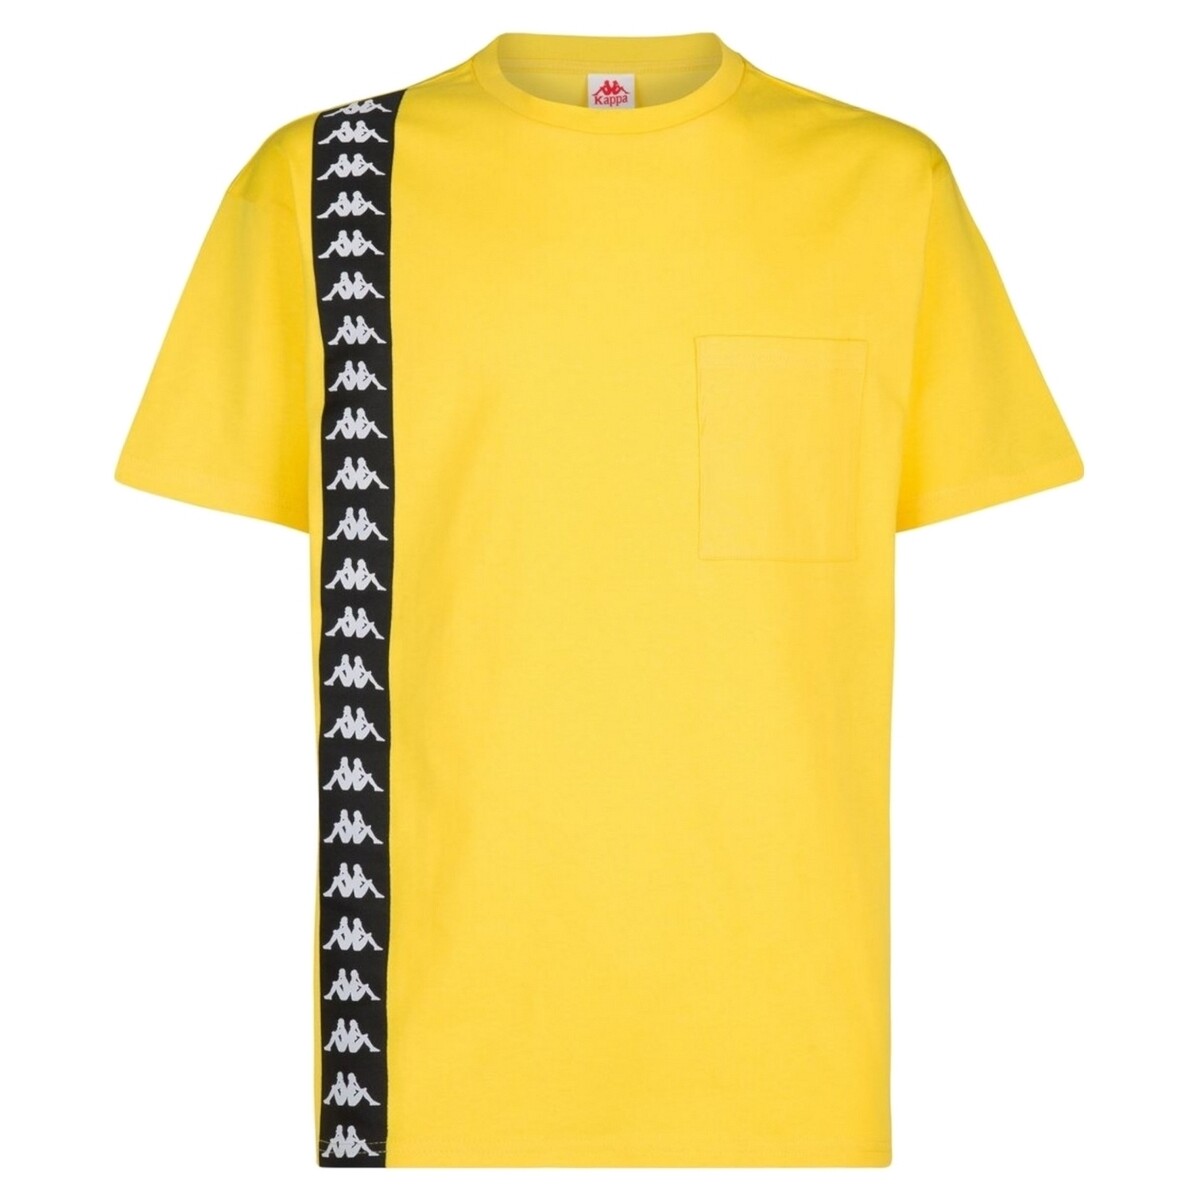 Abbigliamento Uomo T-shirt maniche corte Kappa 3117CIW Giallo